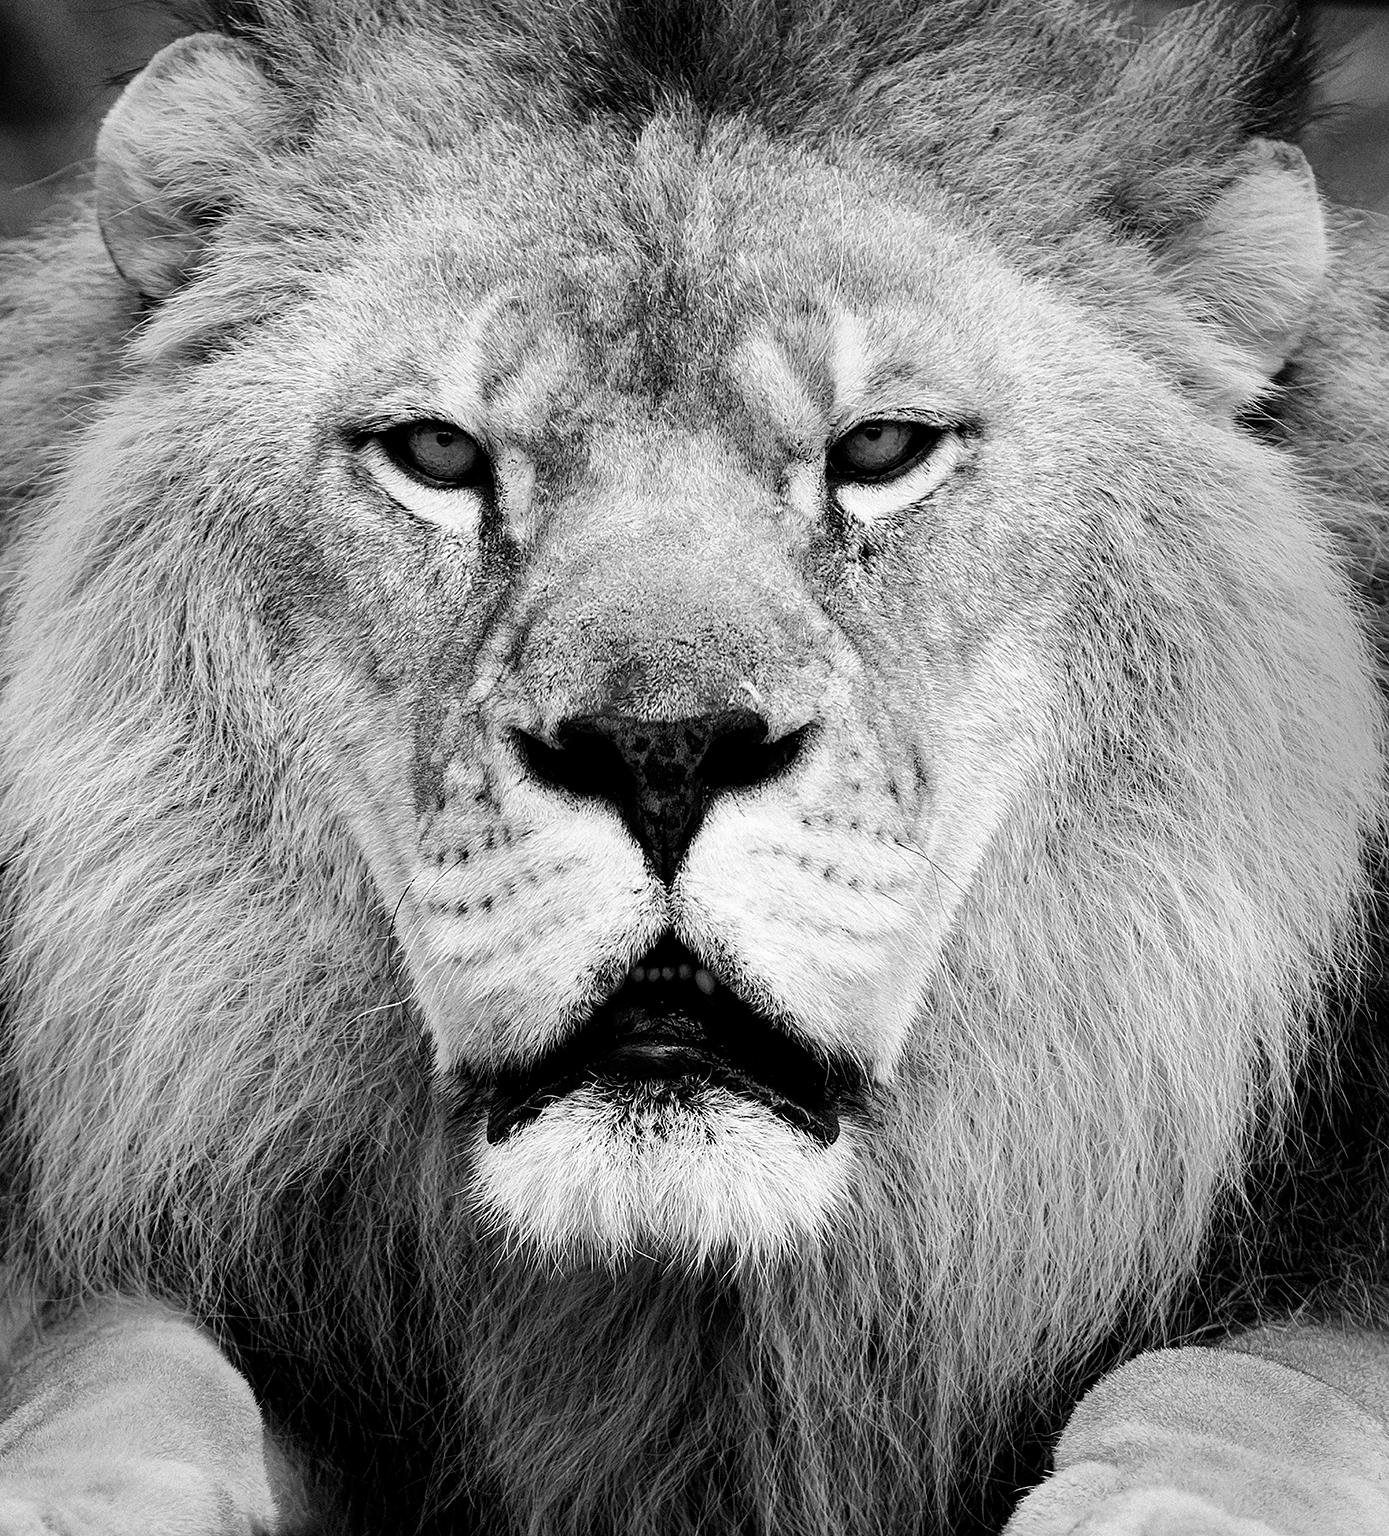 Animal Print Shane Russeck - "Face Off" "30x40" - Photographie en noir et blanc, Photographie de Lion Art Africain